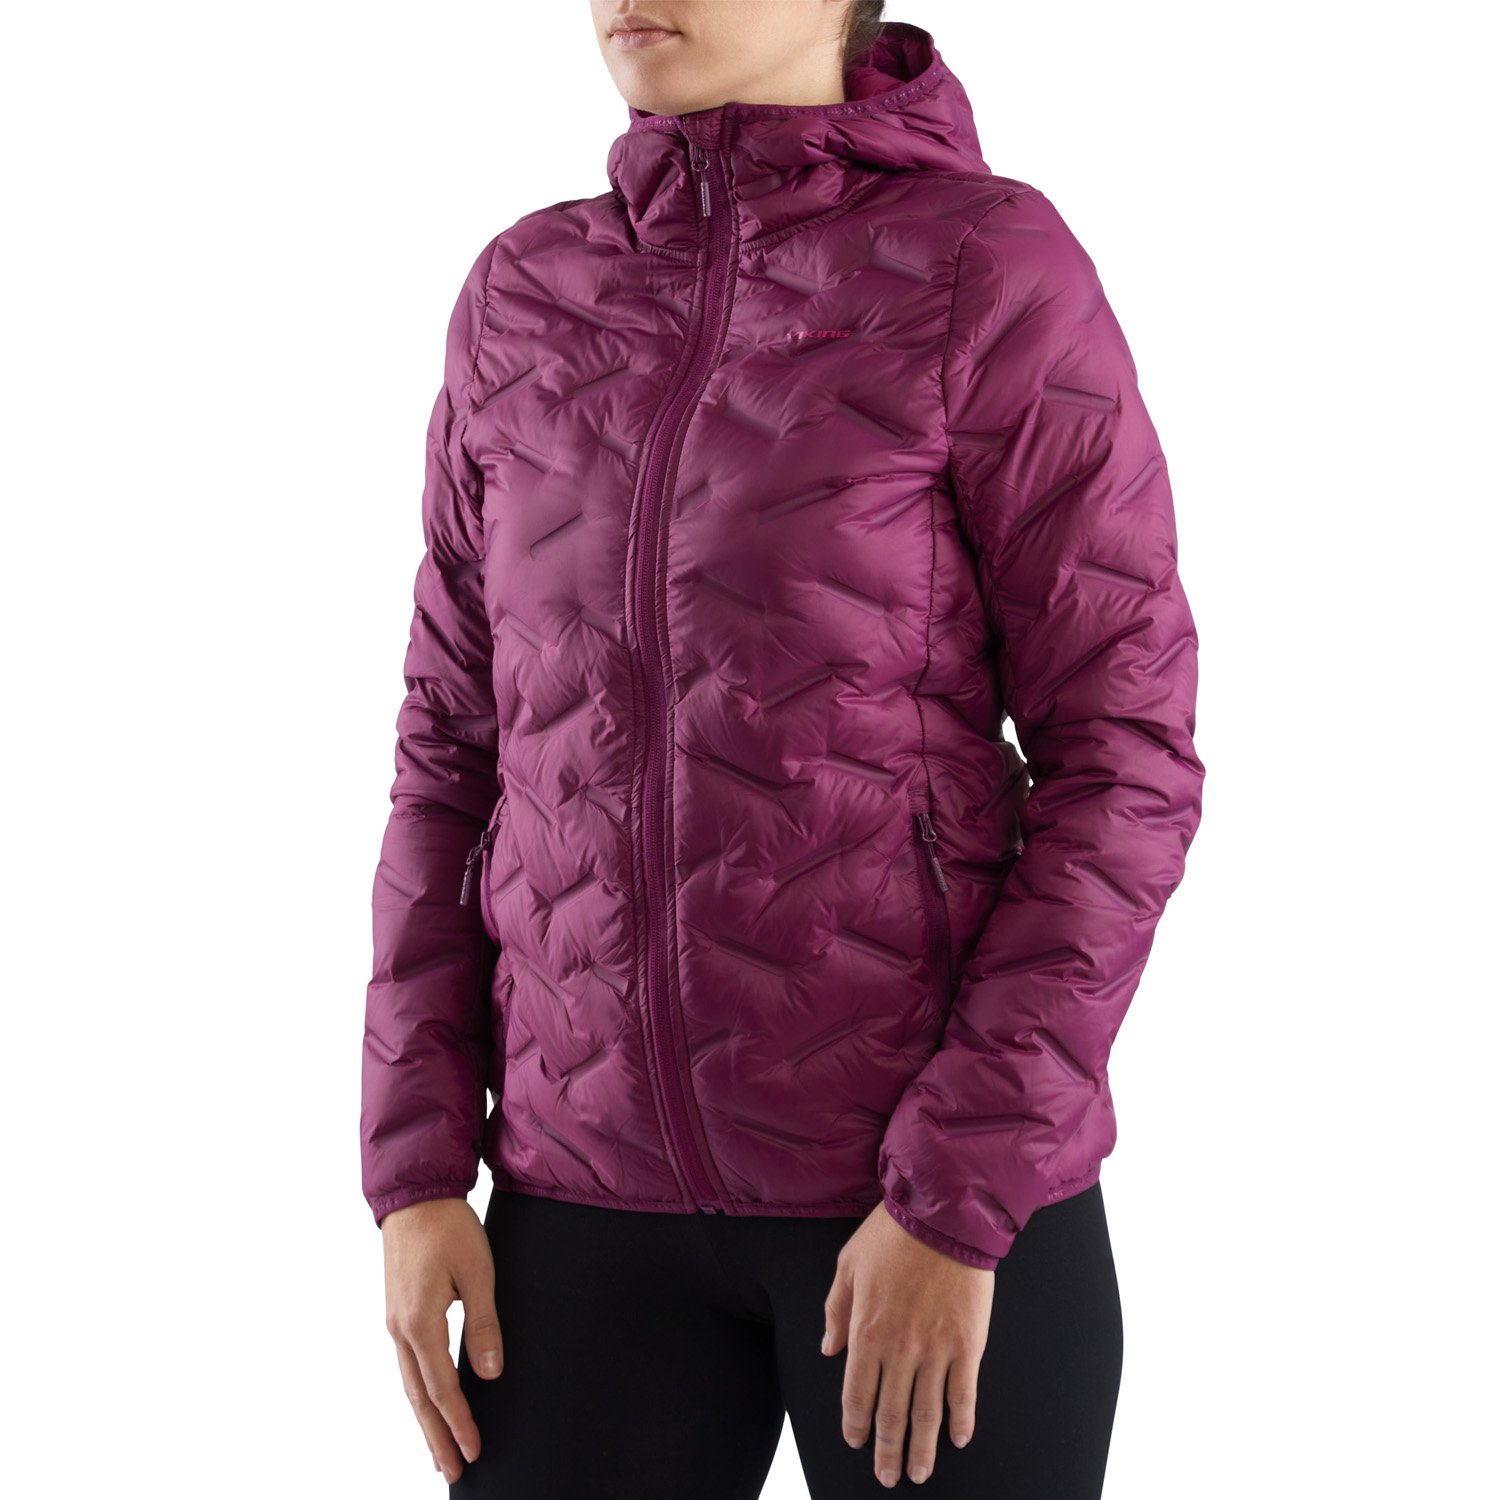 Куртка VIKING Aspen Lady Festival Fuchsia, для активного отдыха, женская, фиолетовая, 750/23/8818_0046